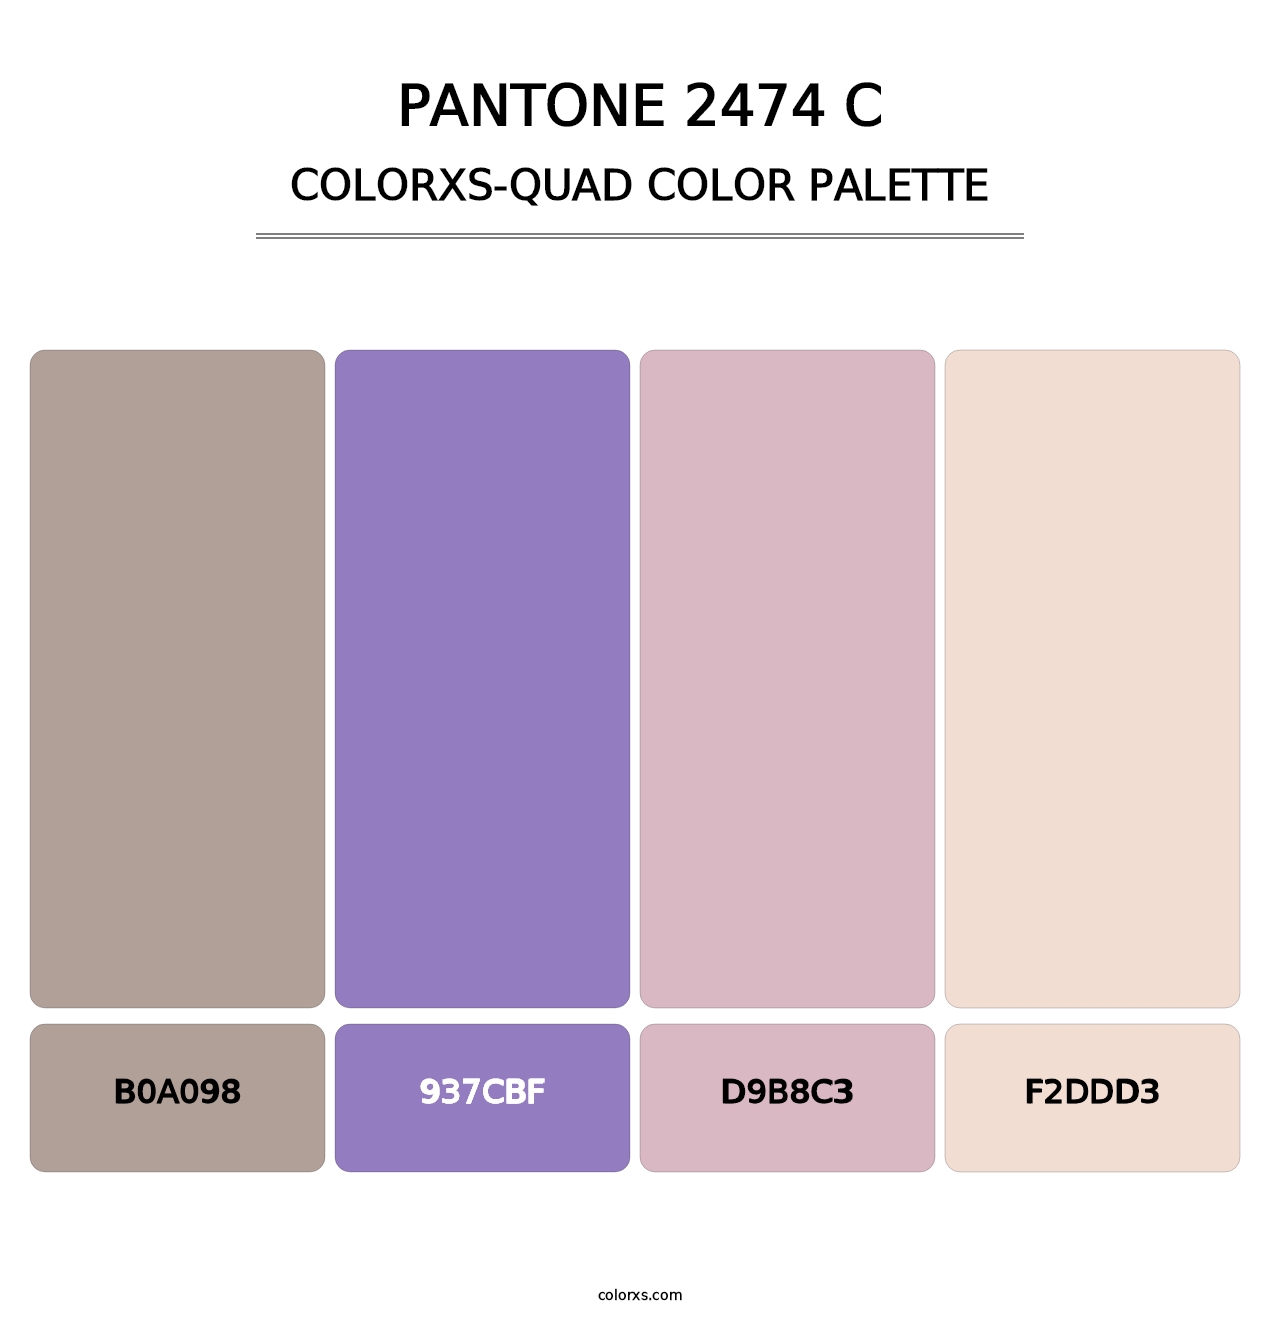 PANTONE 2474 C - Colorxs Quad Palette